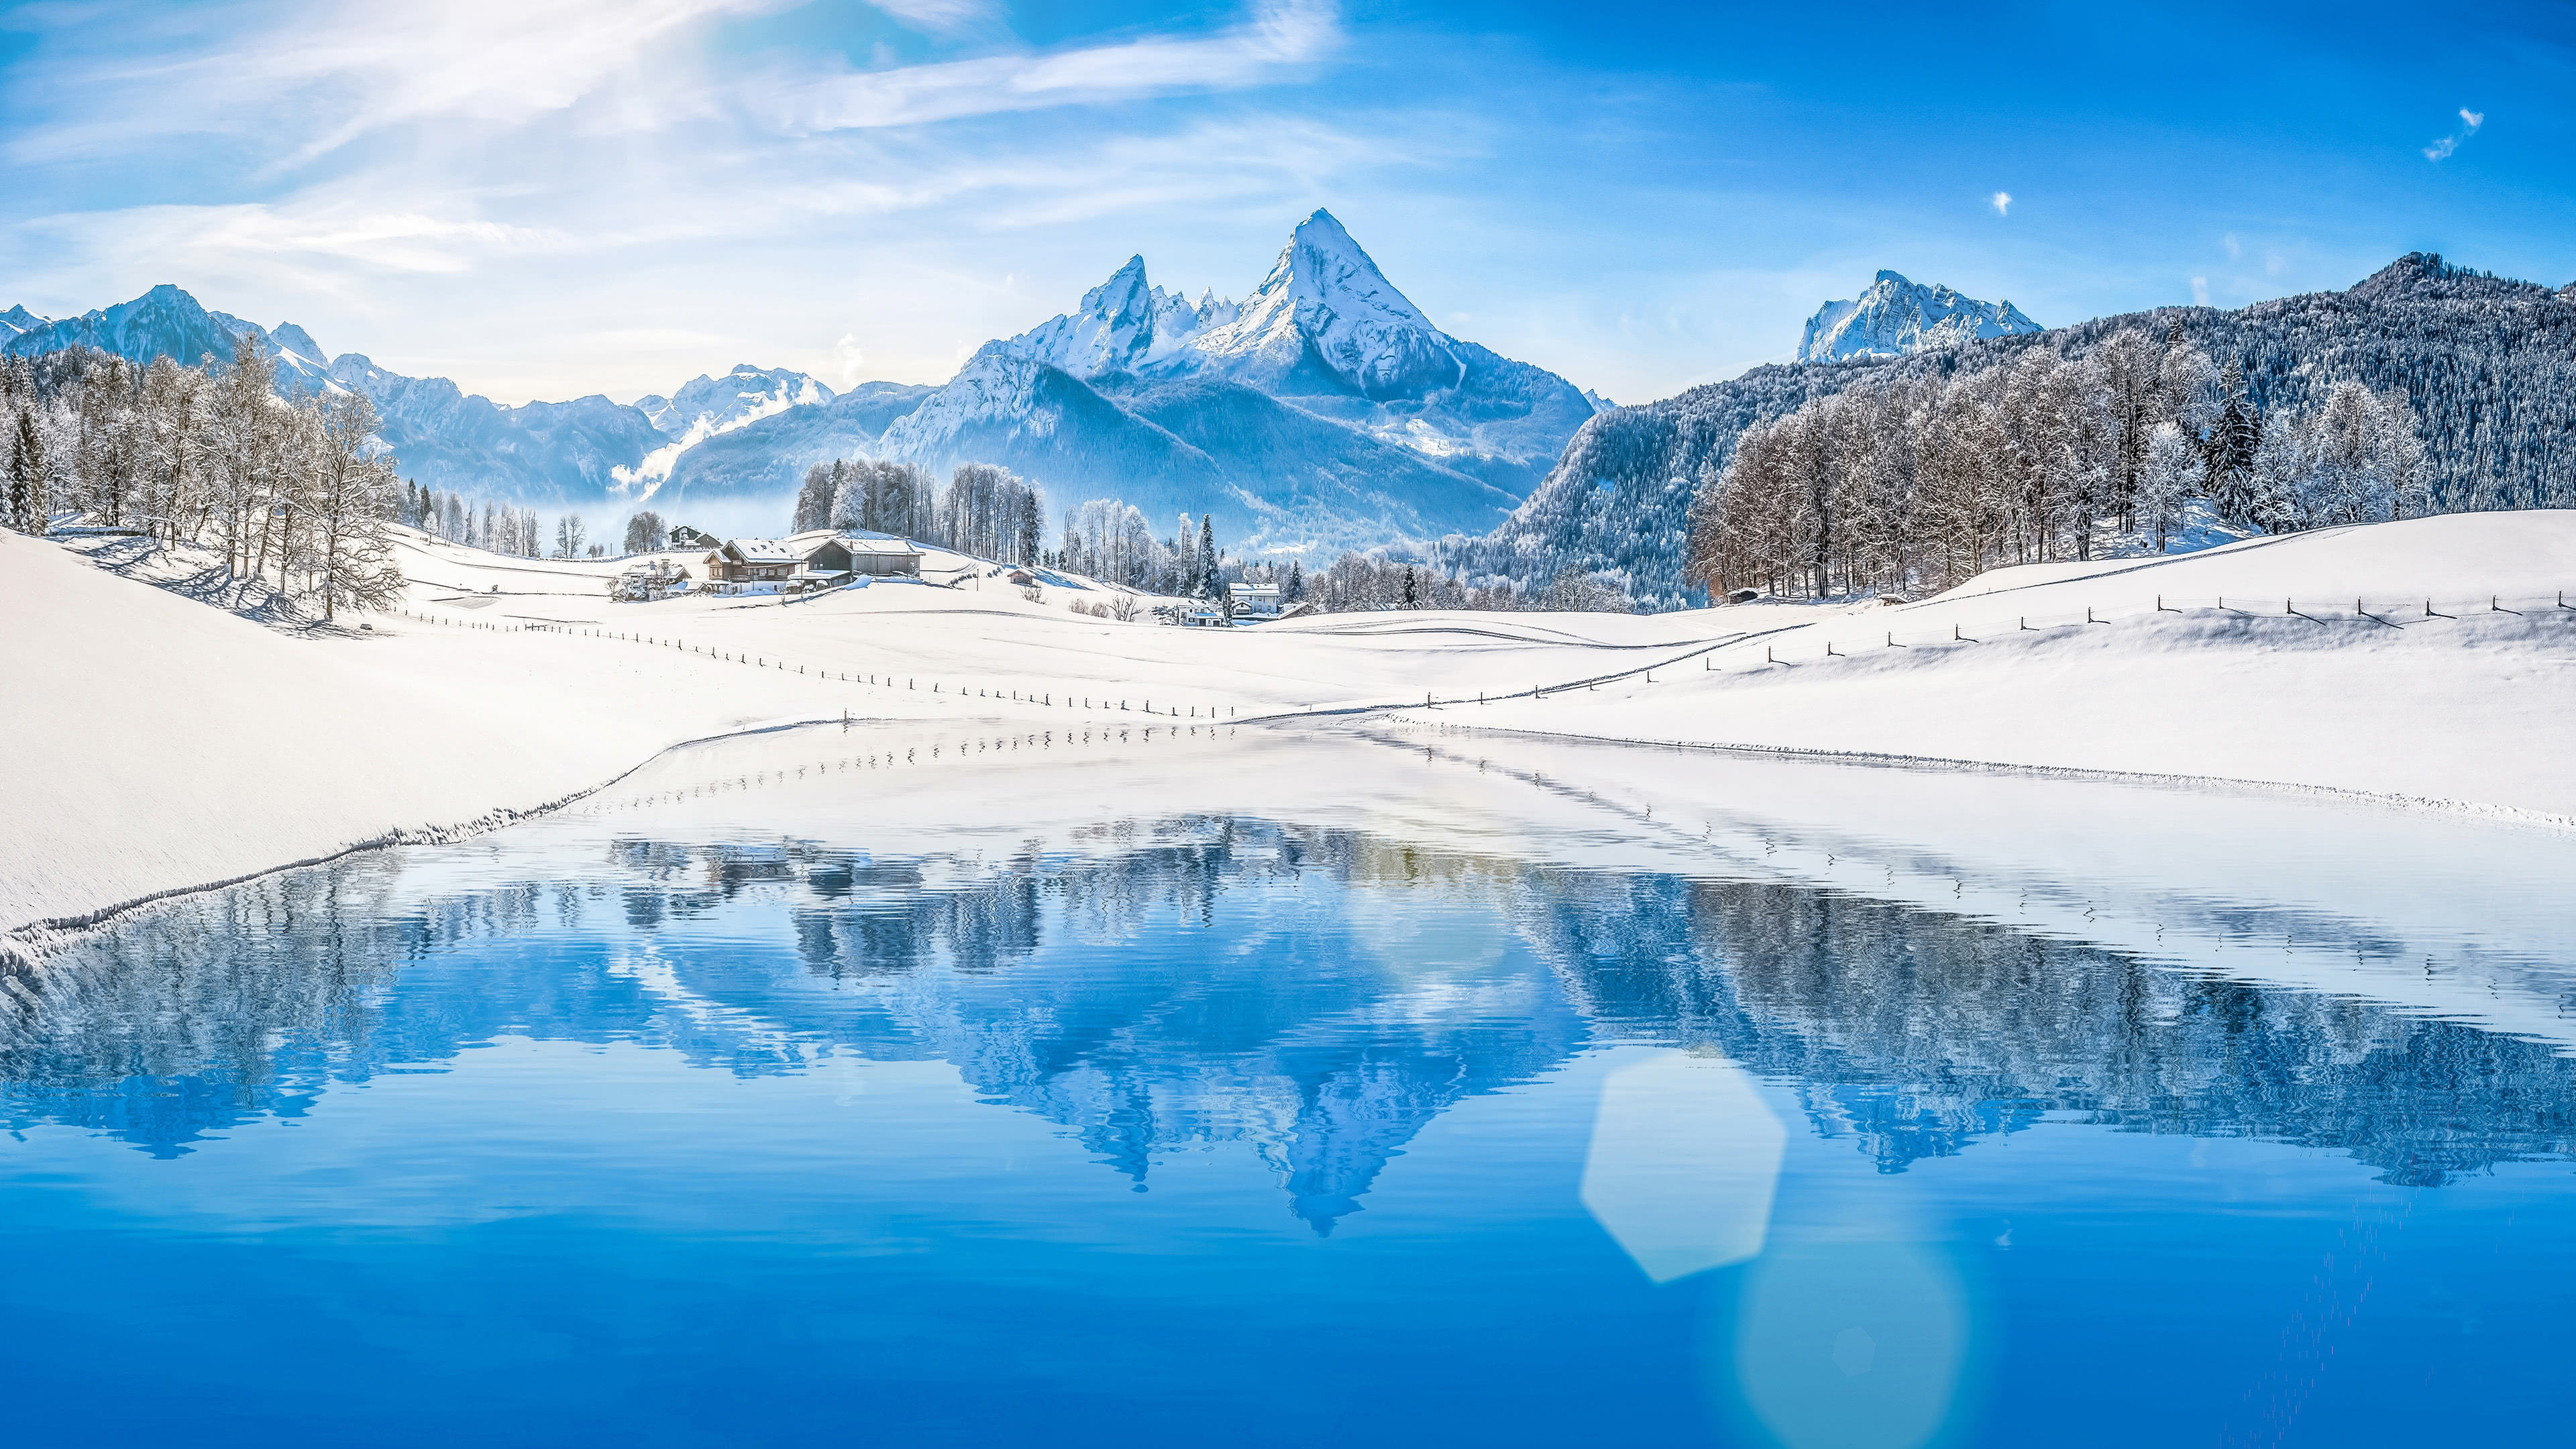 Winter Mountains Lake Landscape UHD 4K Wallpaper | Pixelz